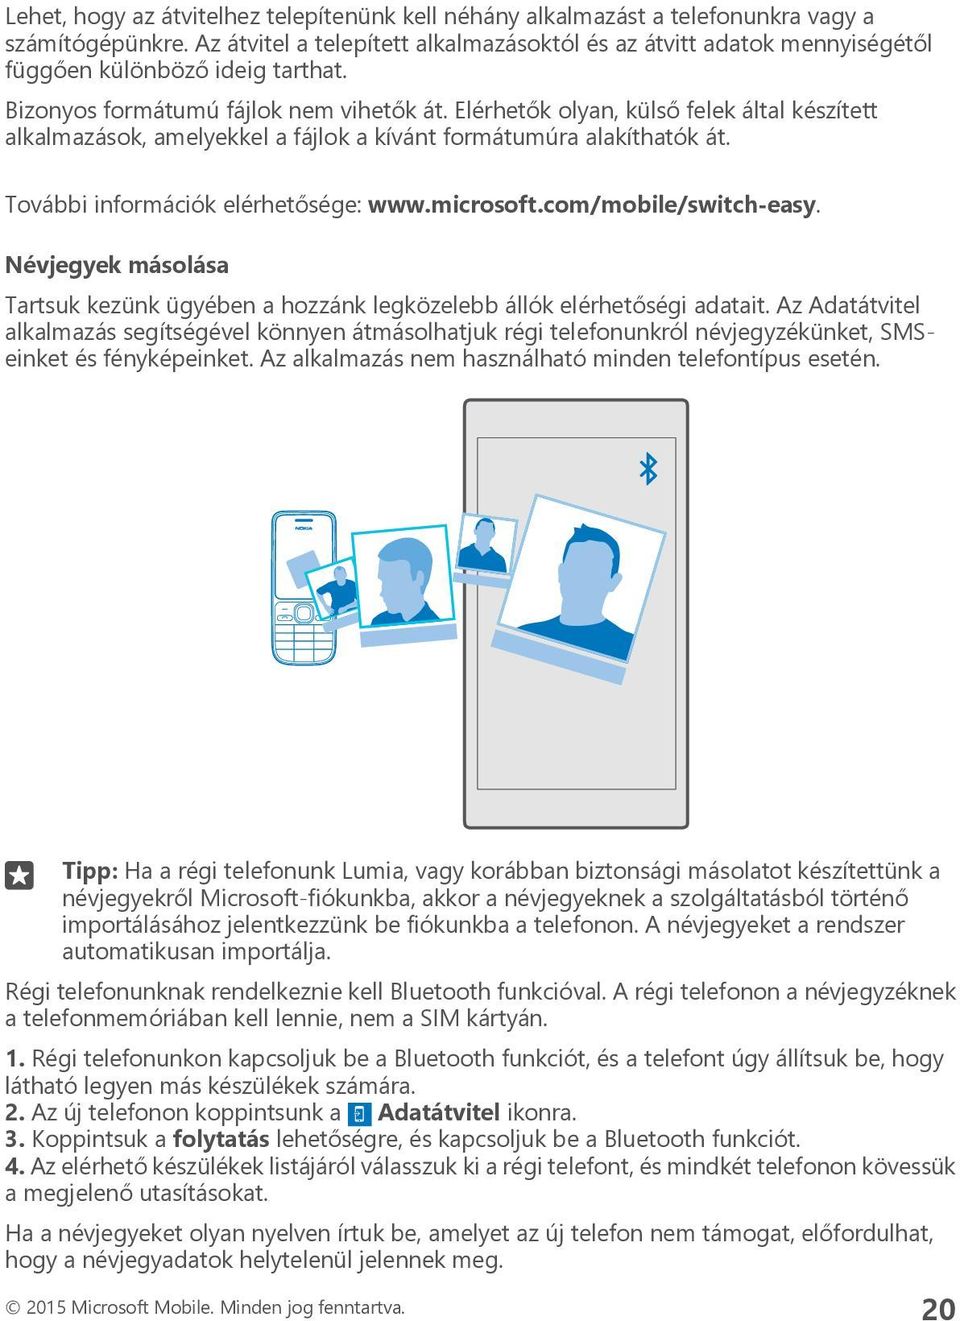 Felhasználói kézikönyv Lumia, Windows Phone 10 Mobile rendszerrel - PDF  Free Download